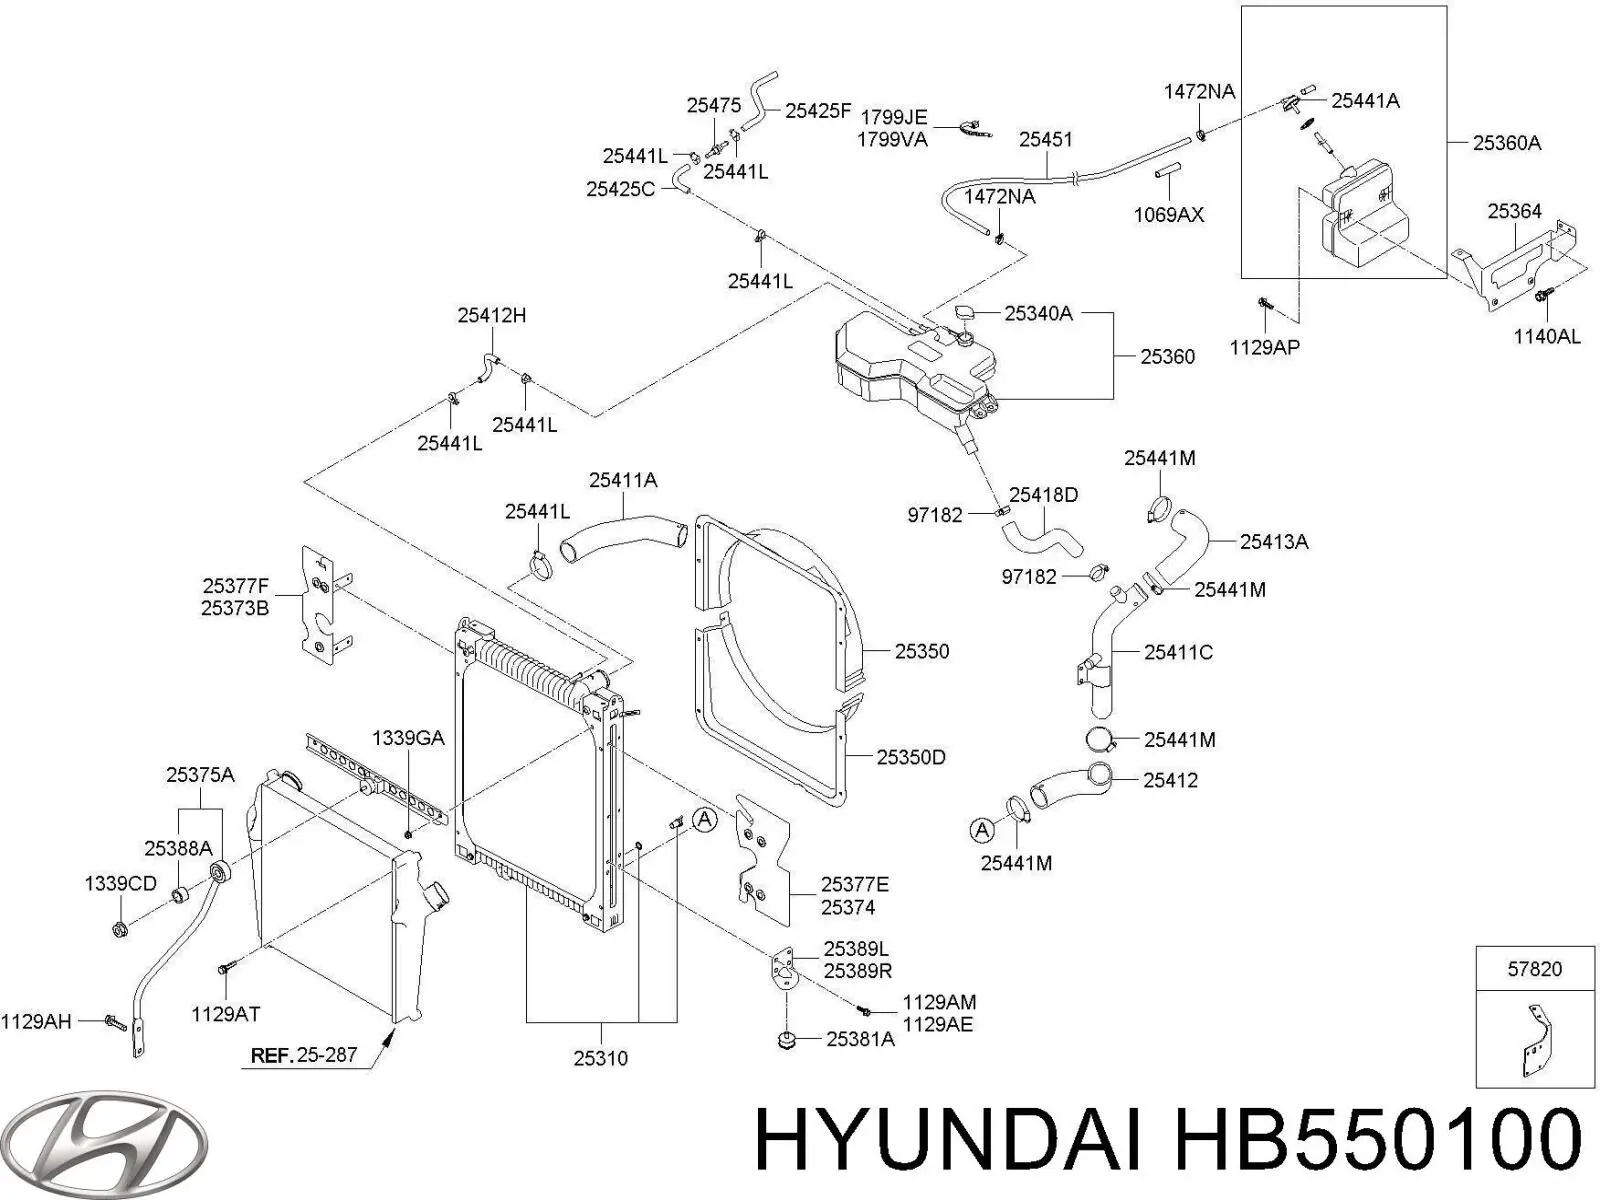 HB550100 Mitsubishi depósito de bomba de dirección hidráulica